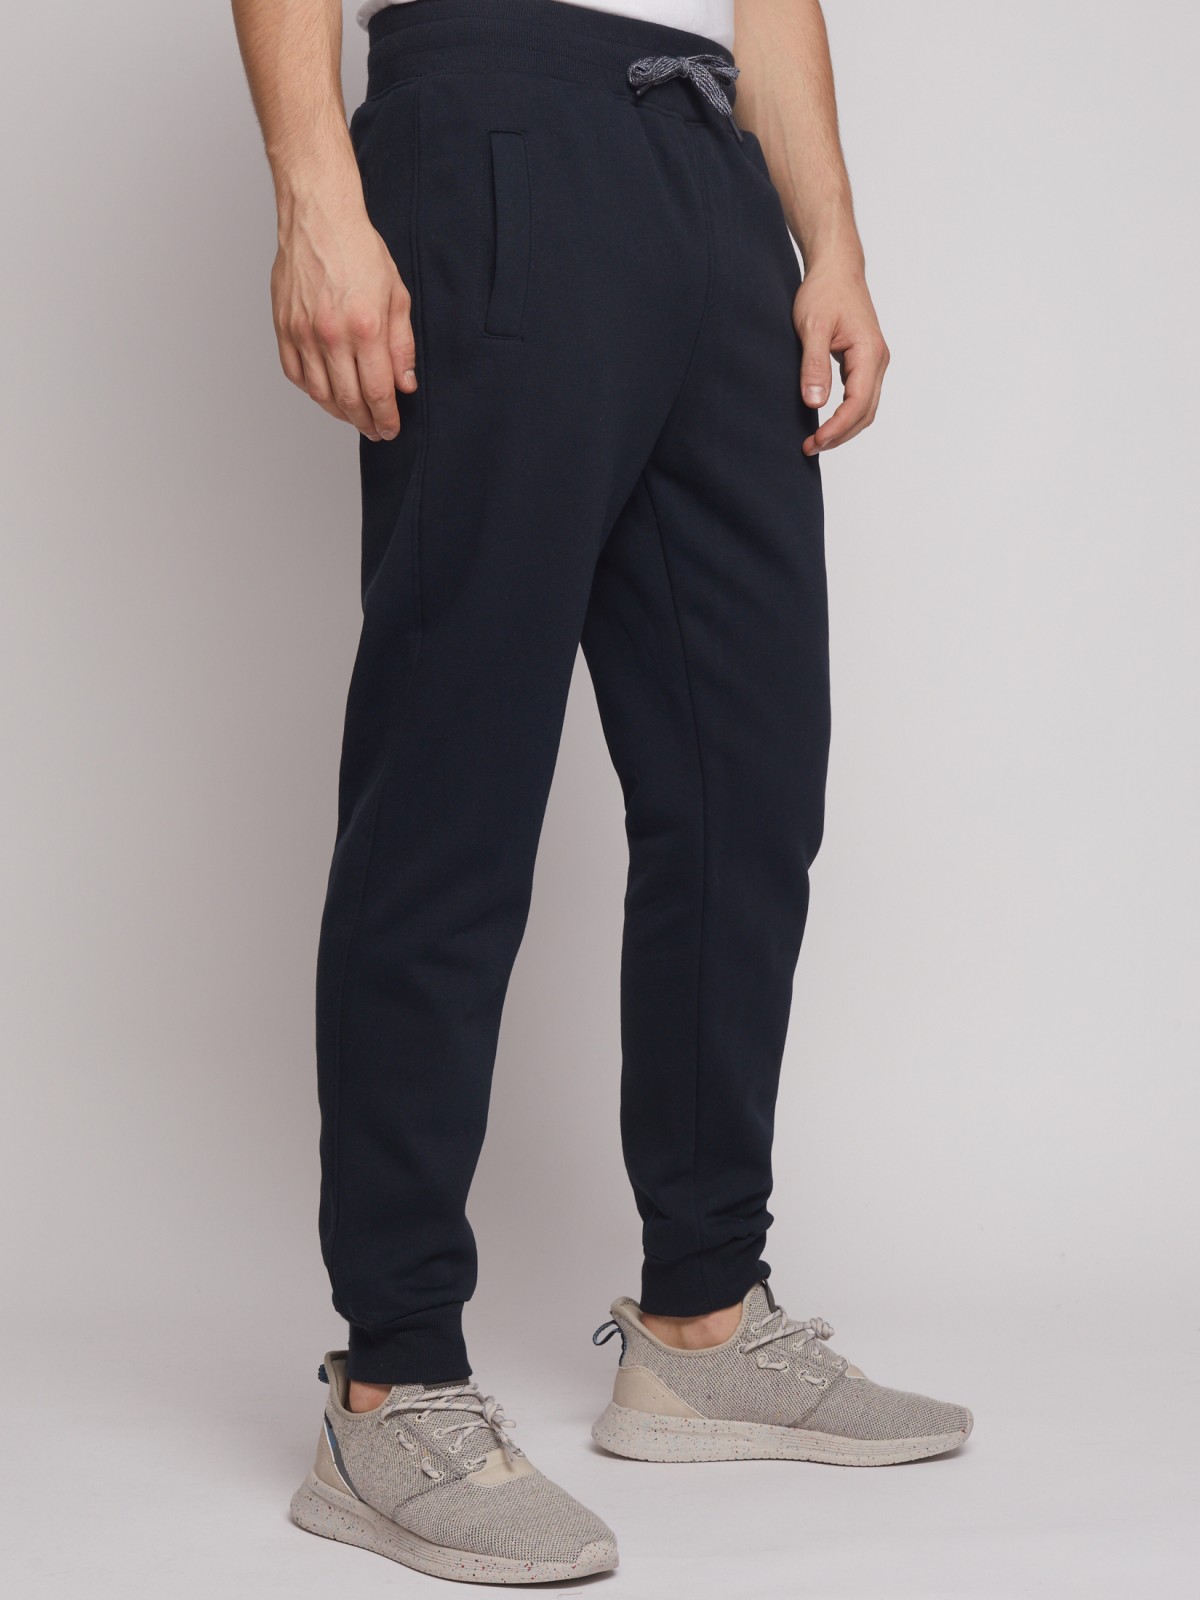 Спортивные брюки-джоггеры zolla 212427675012, цвет темно-синий, размер S - фото 2